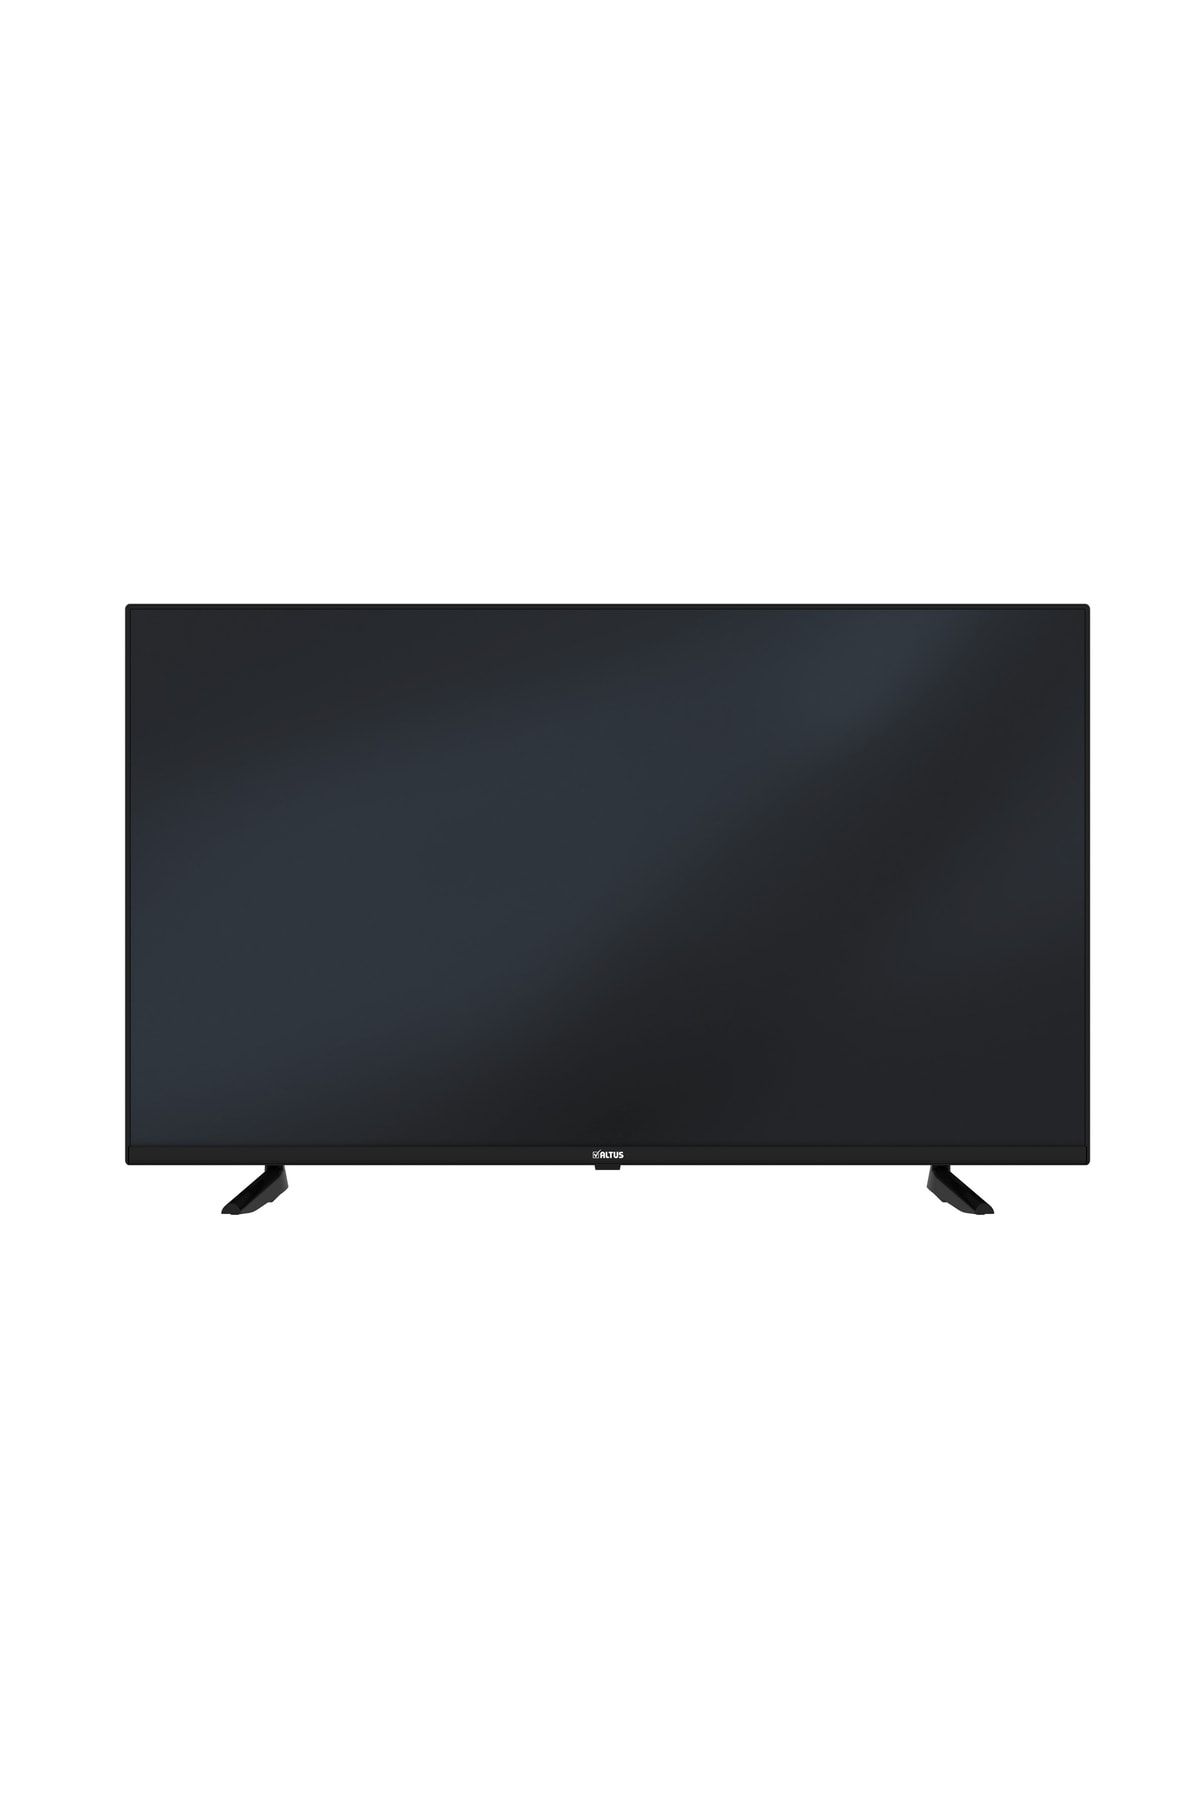 Altus Al50 Uhd 7523 4k Ultra Hd Android Smart Tv